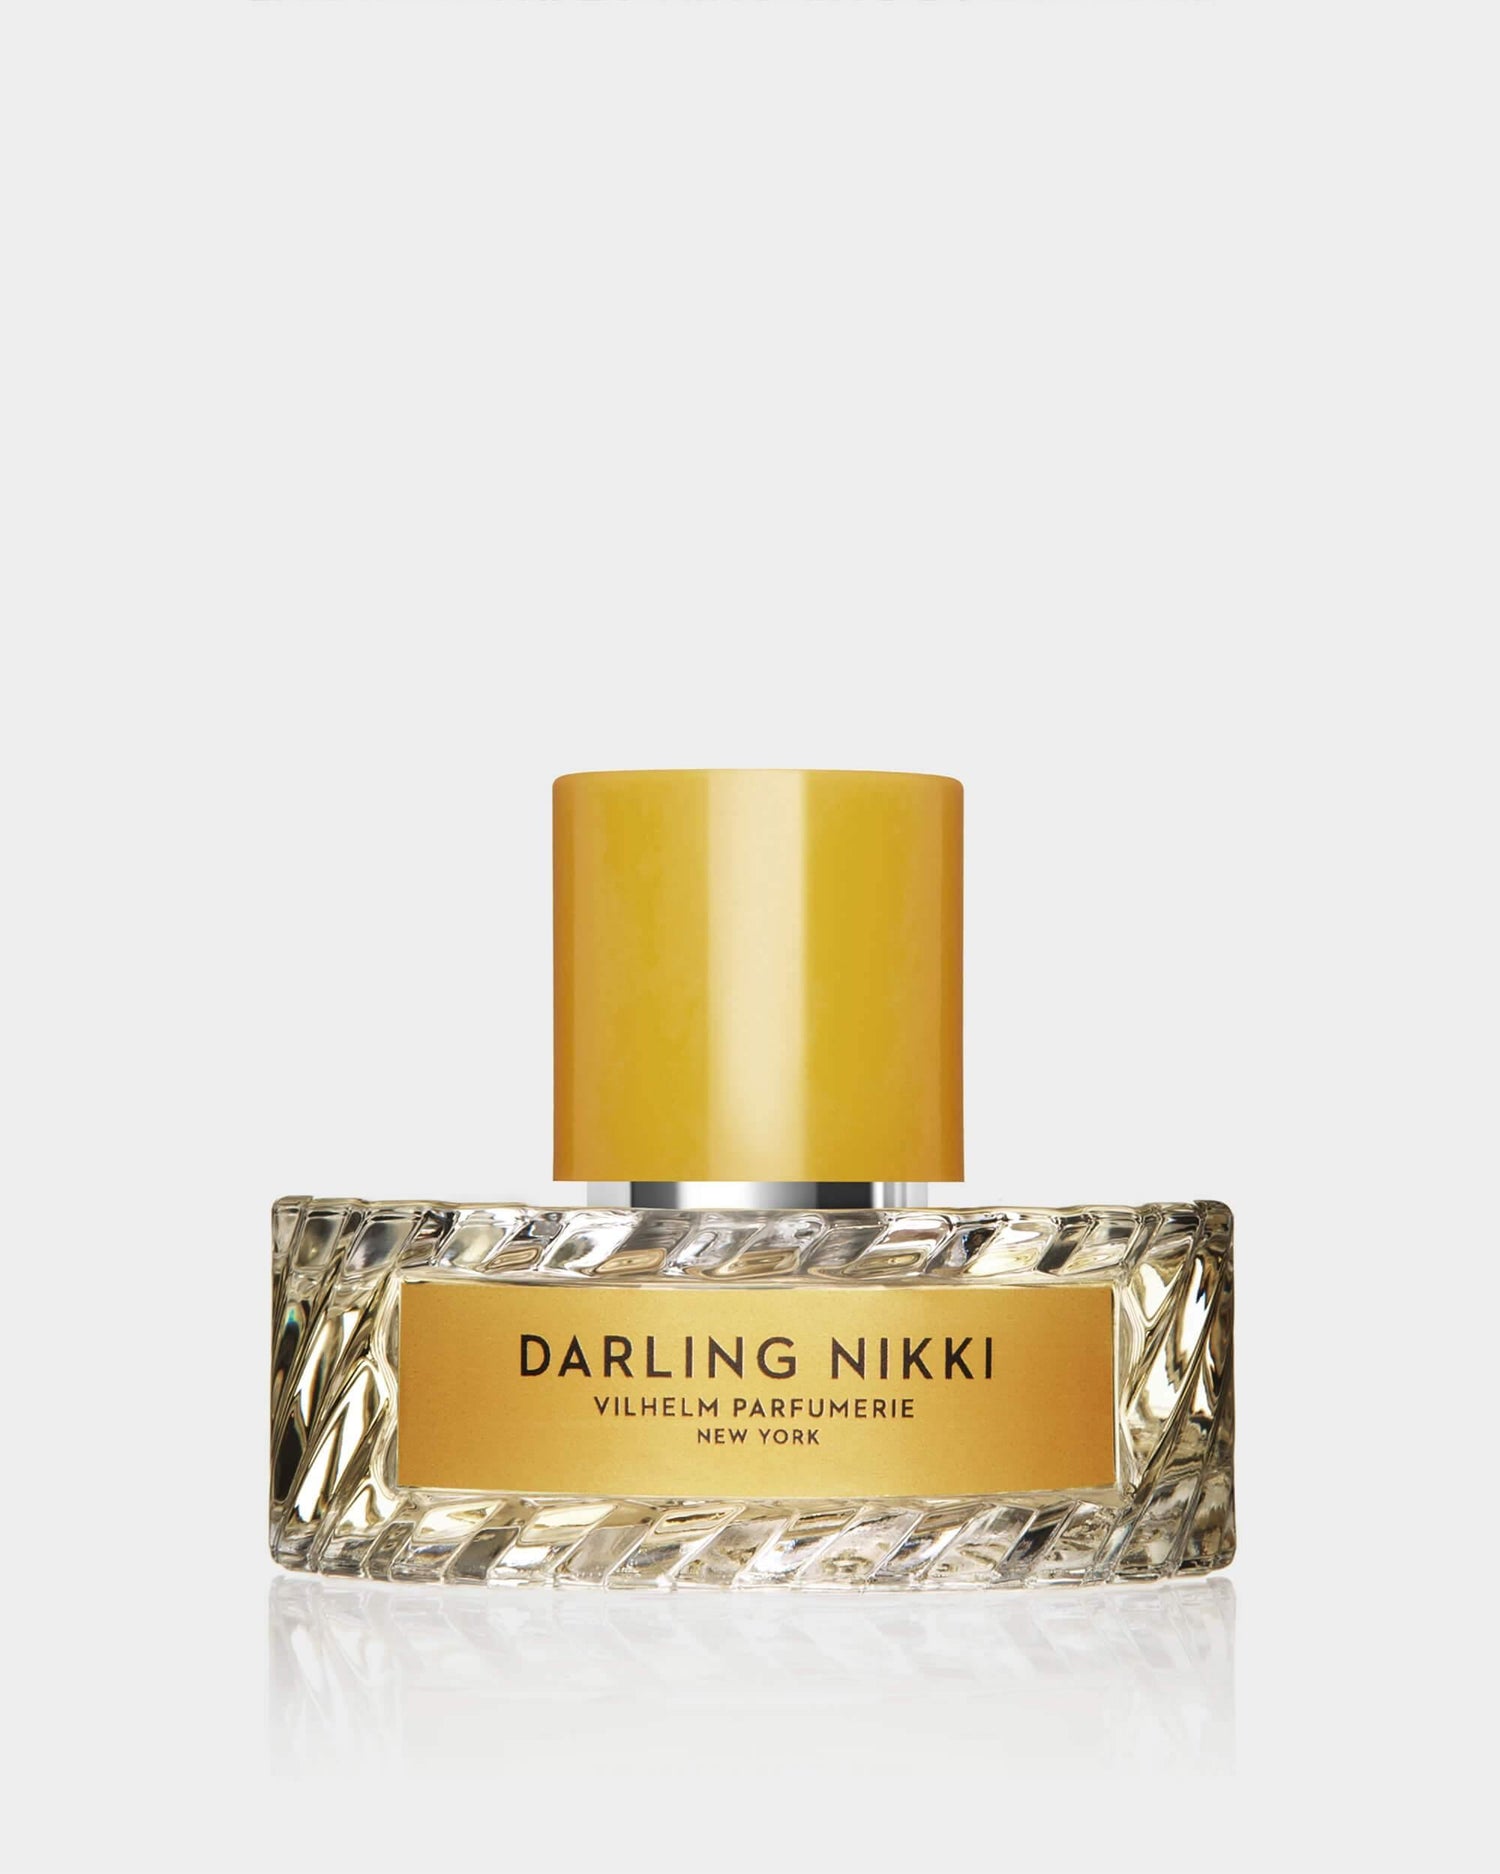 DARLING NIKKI - Vilhelm Parfumerie